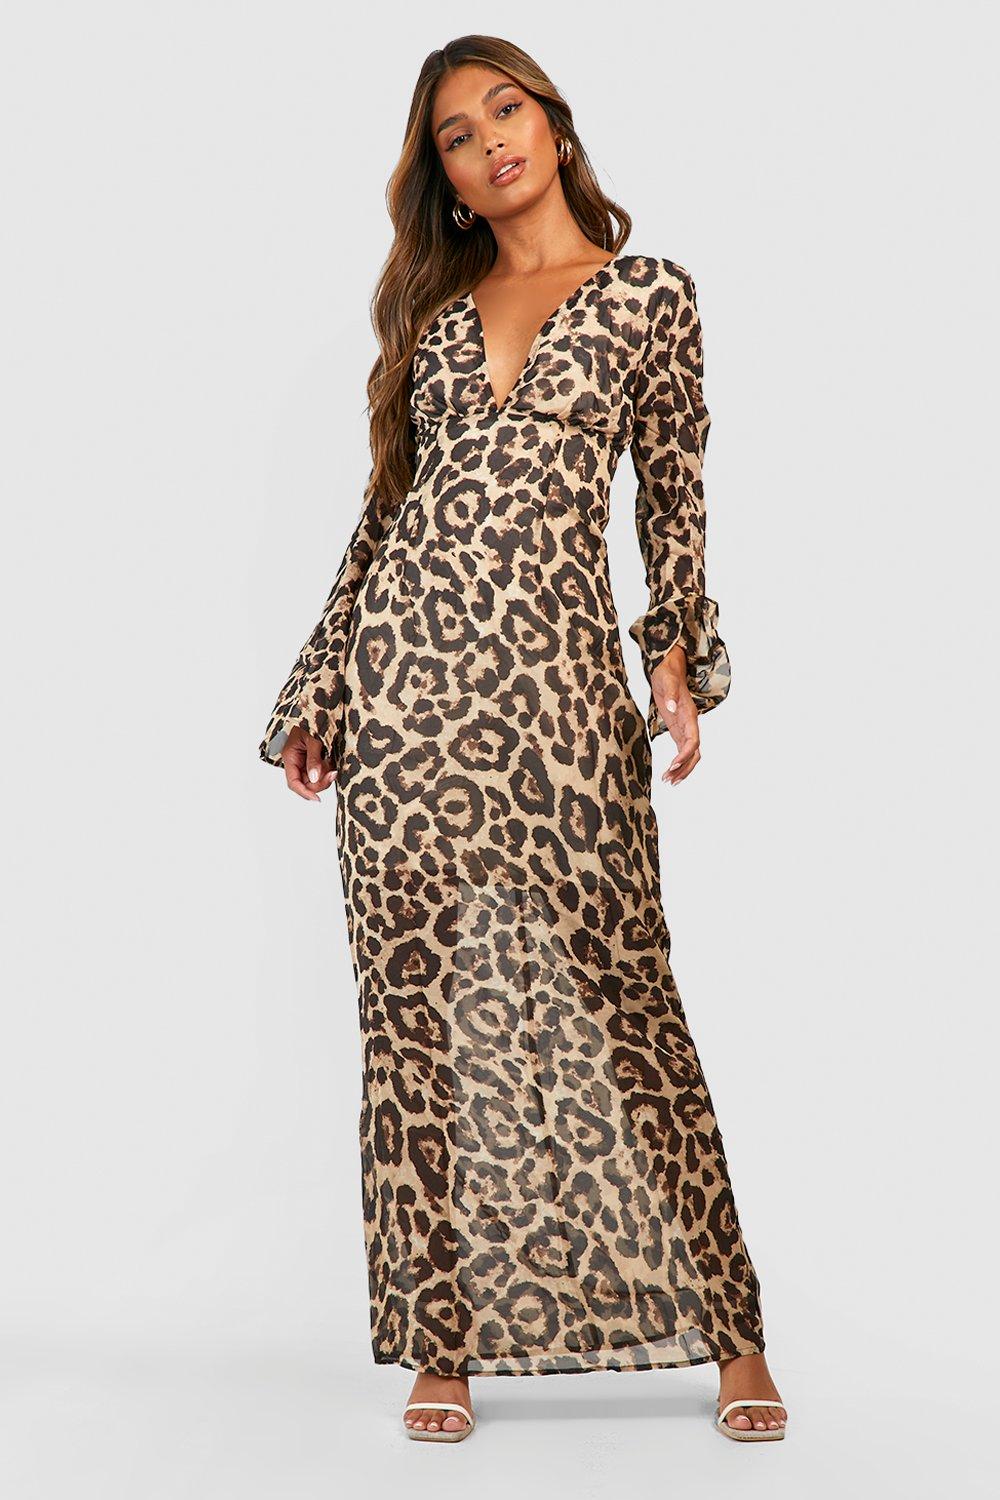 Leopard Print Chiffon Maxi Dress